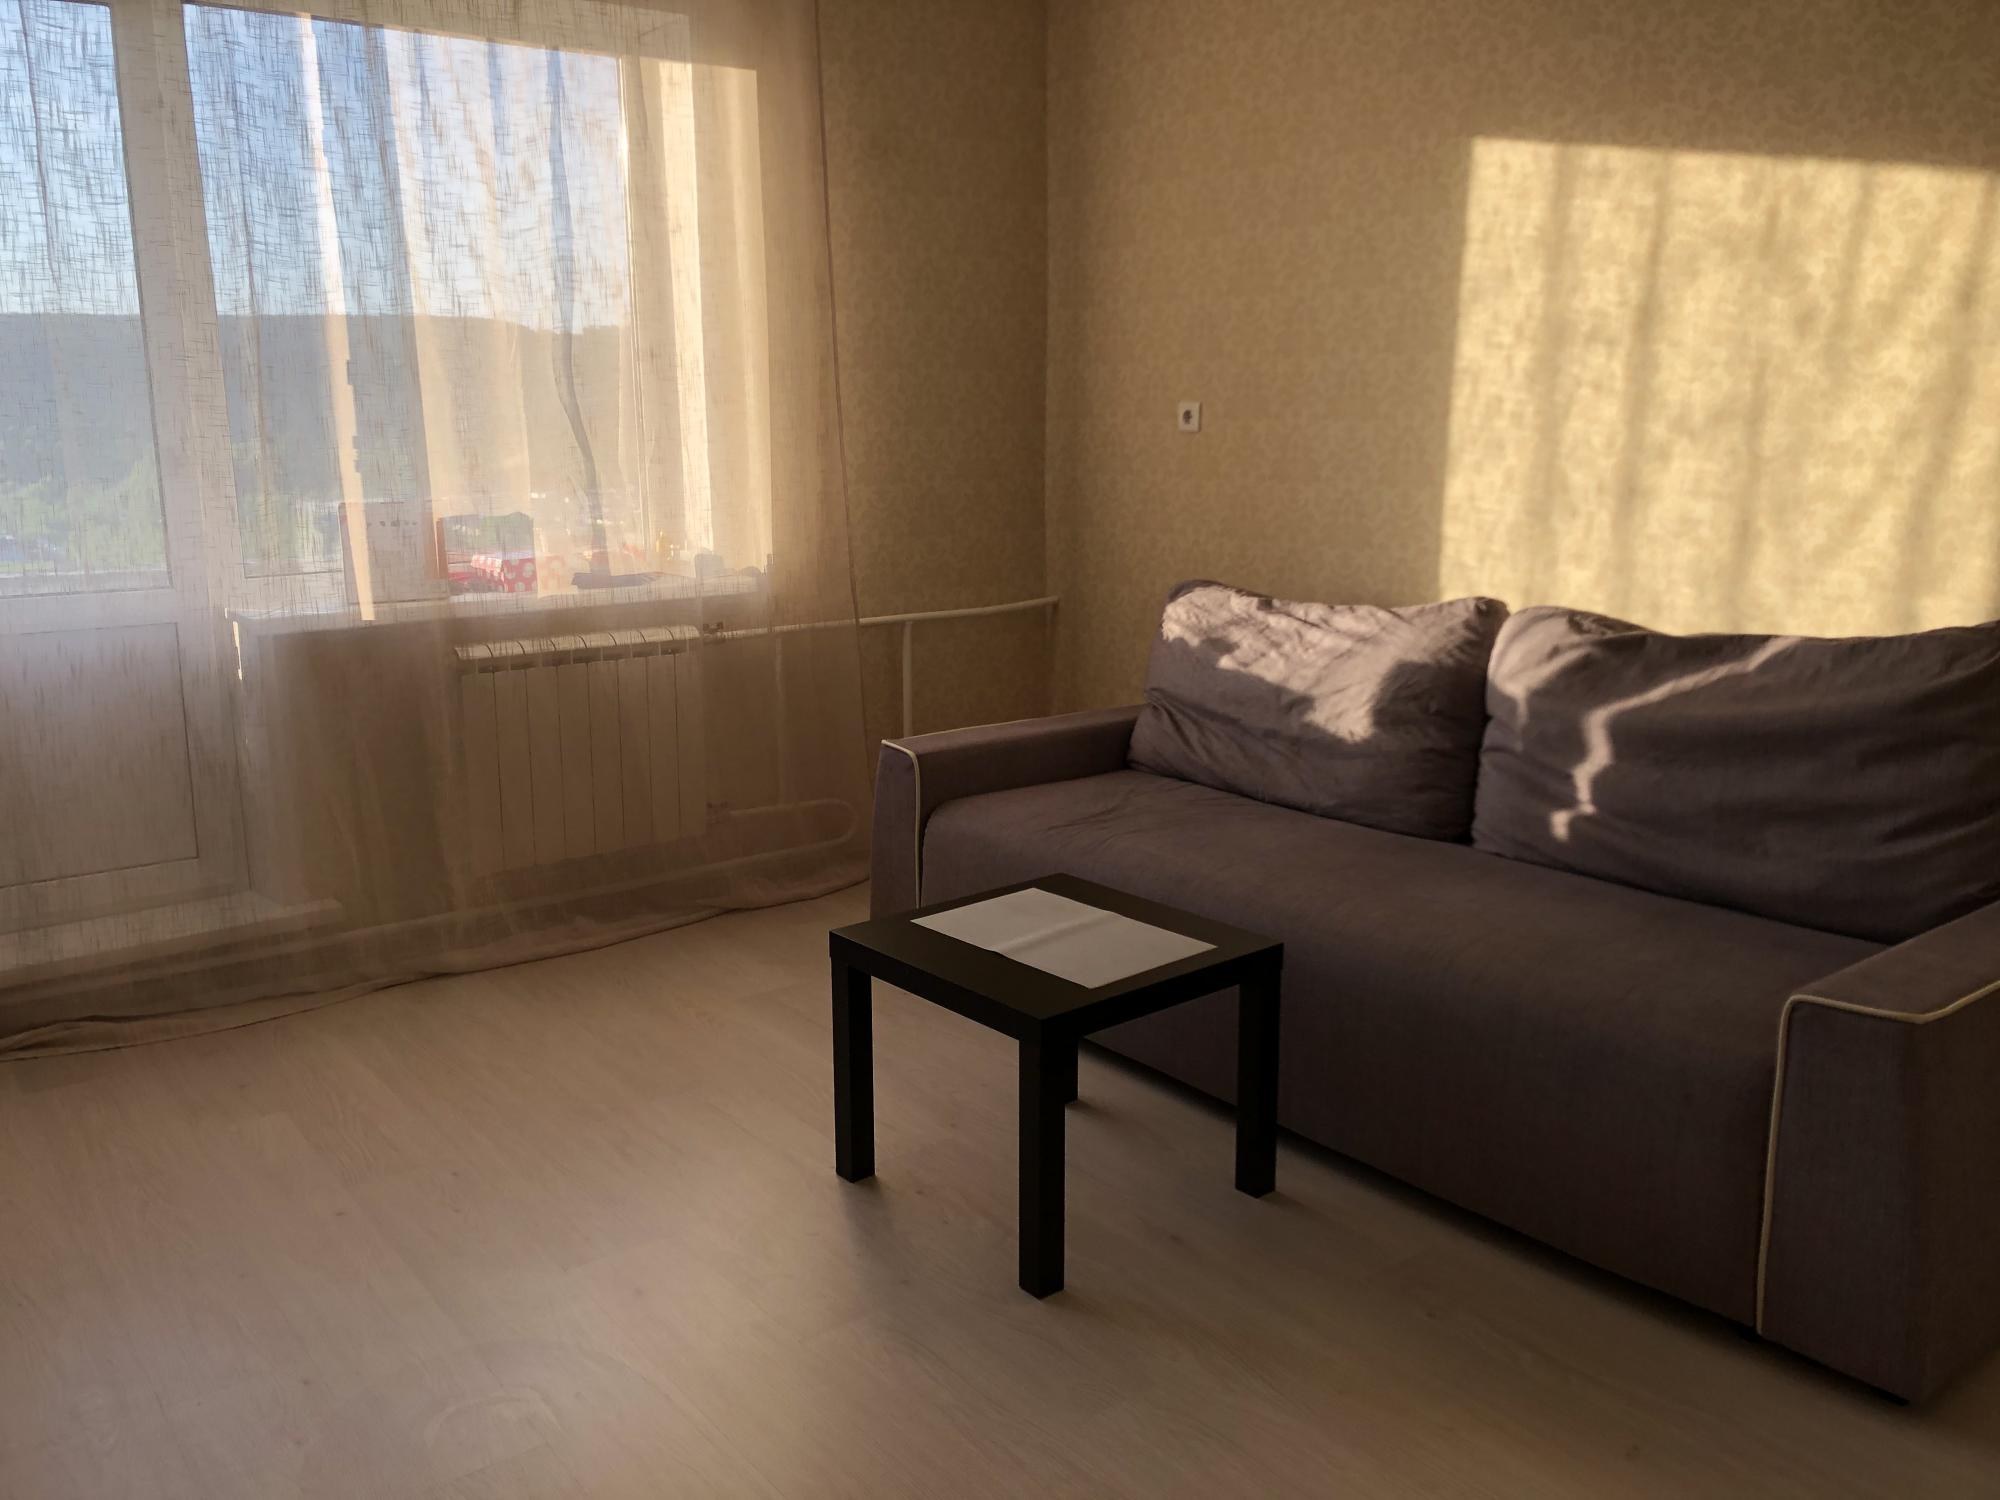 Снять квартиру в южноуральске на длительный срок с мебелью без посредников 1 комнатную квартиру